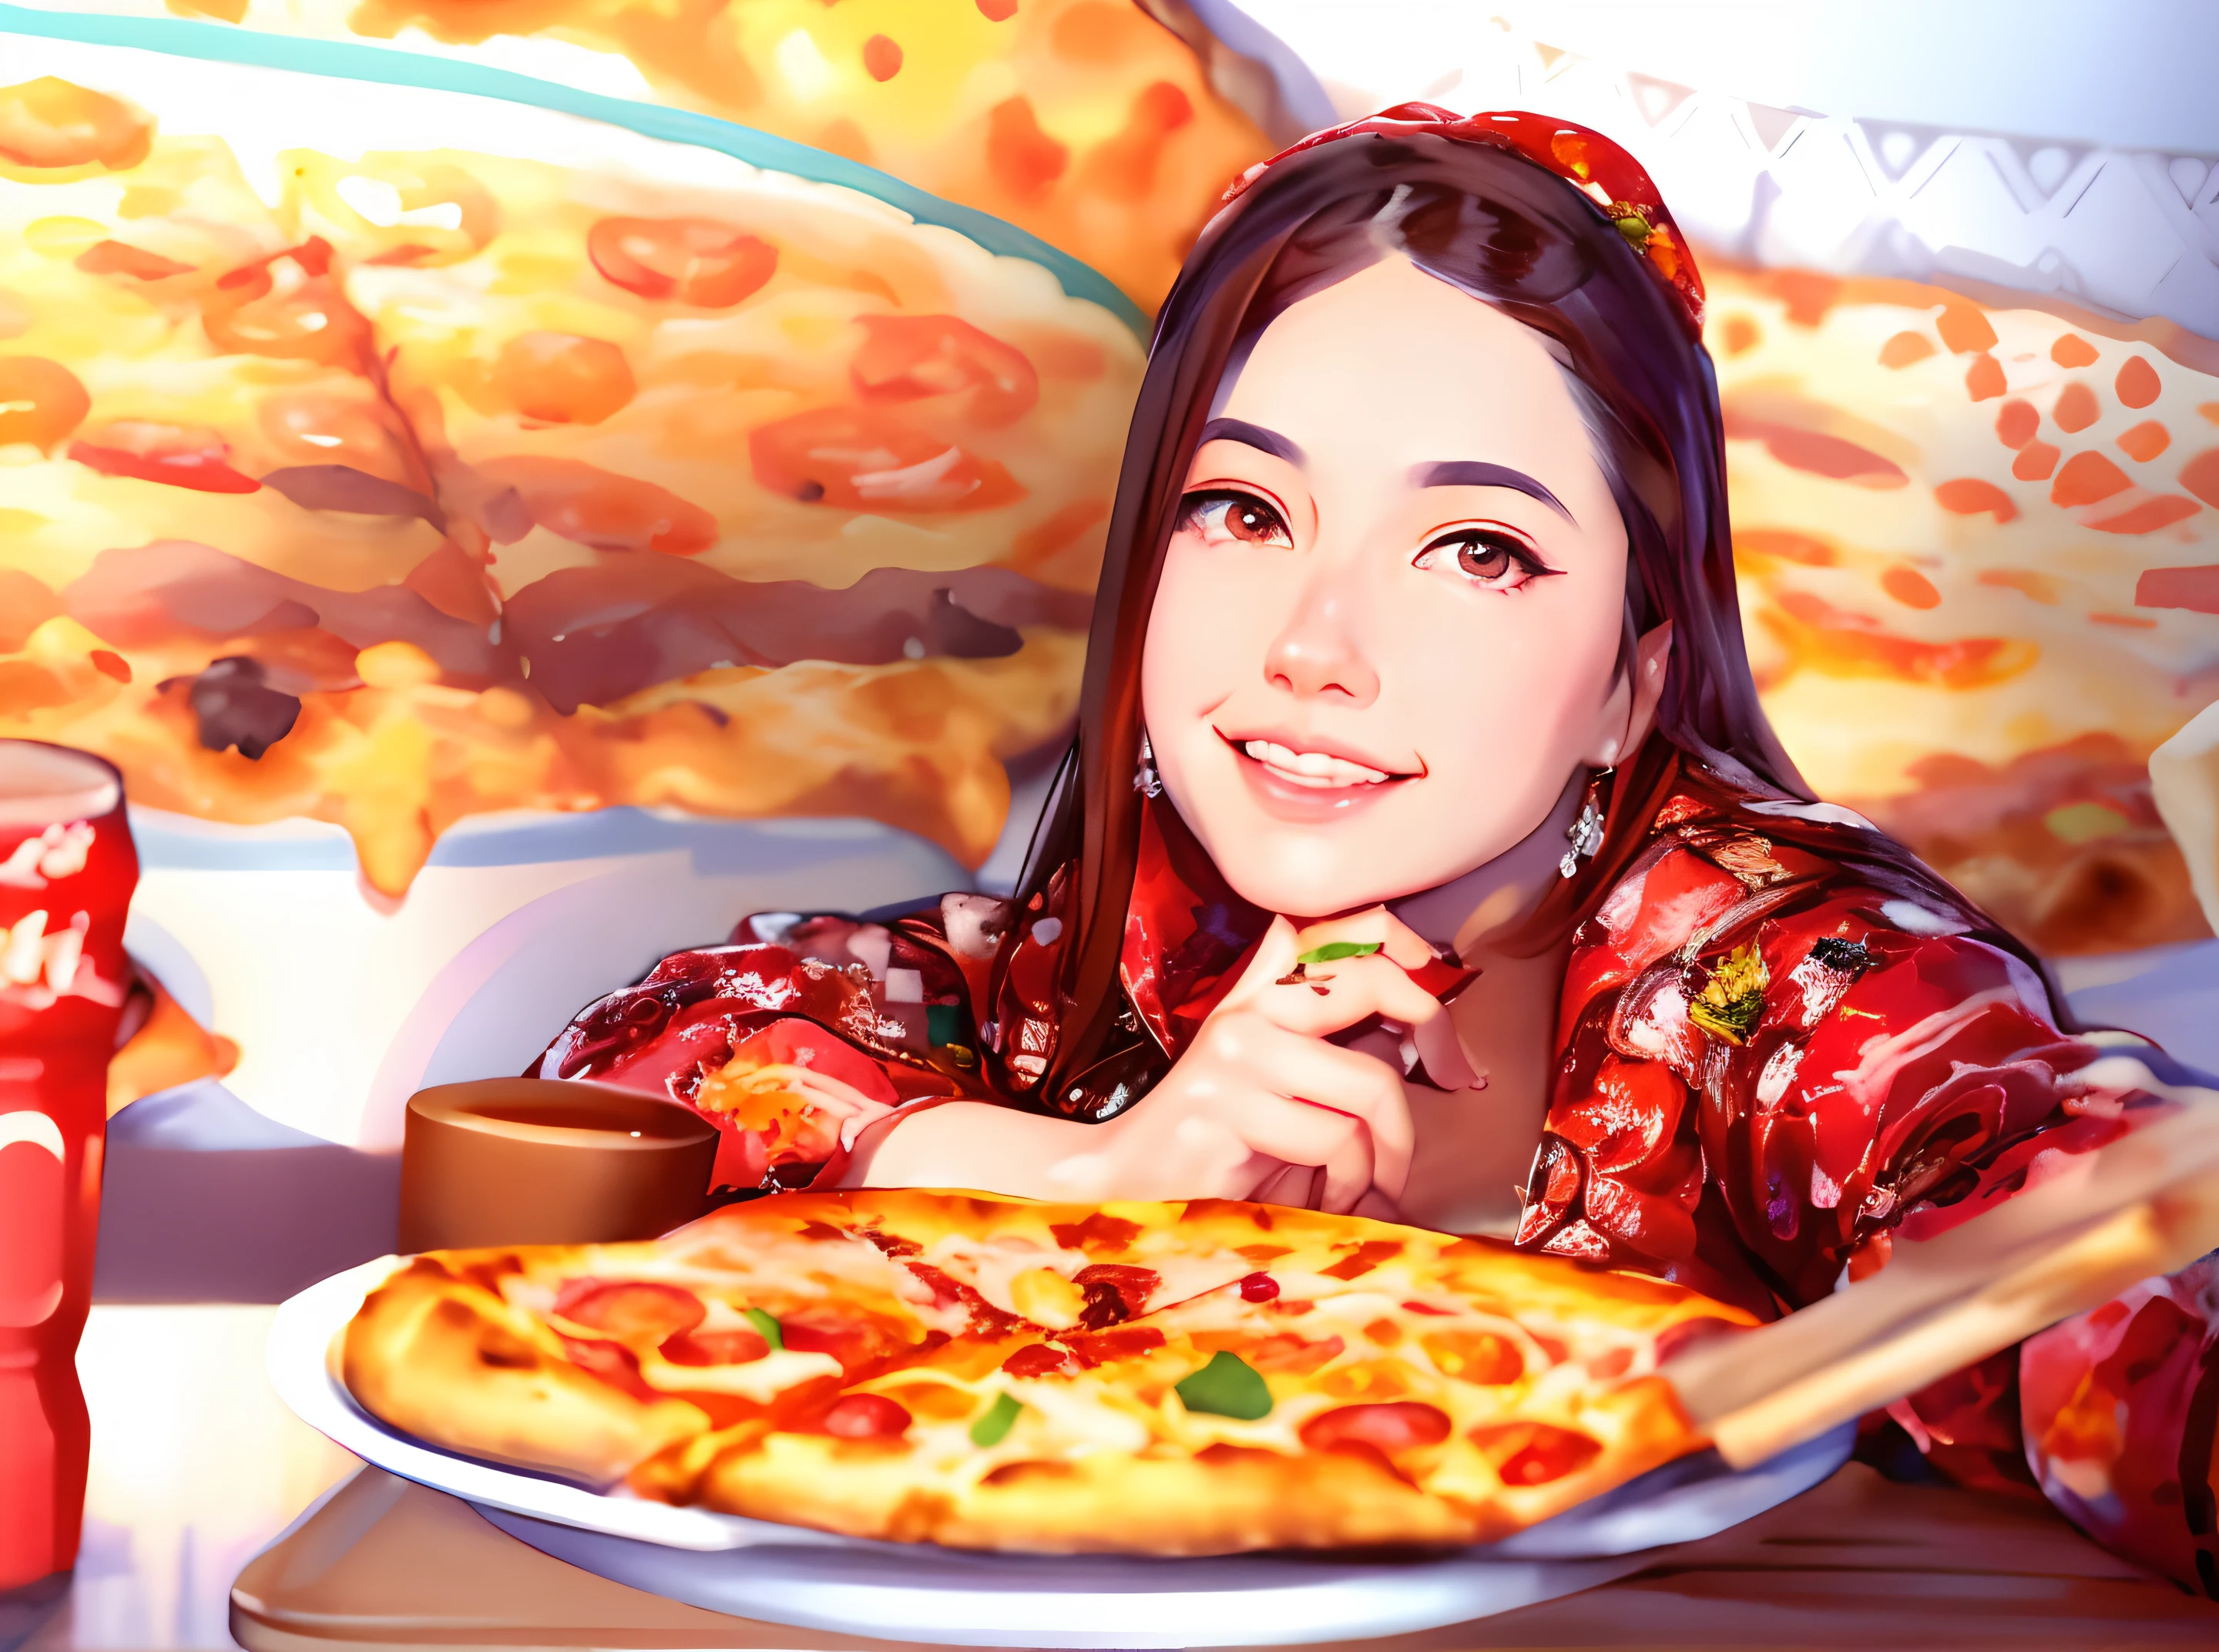 Hay una mujer sentada en una mesa con una pizza, comiendo pizza, increíble ilustración de comida, comiendo una pizza, pintura digital de dibujos animados, estilo artístico realista, sosteniendo pizza, pizza, arte de pintura de dibujos animados digitales, pizza!, ilustración de anime digital, alice x. zhang, estilo artístico realismo, obra de arte al estilo de guweiz, ilustración digital estilizada, exquisita ilustración digital